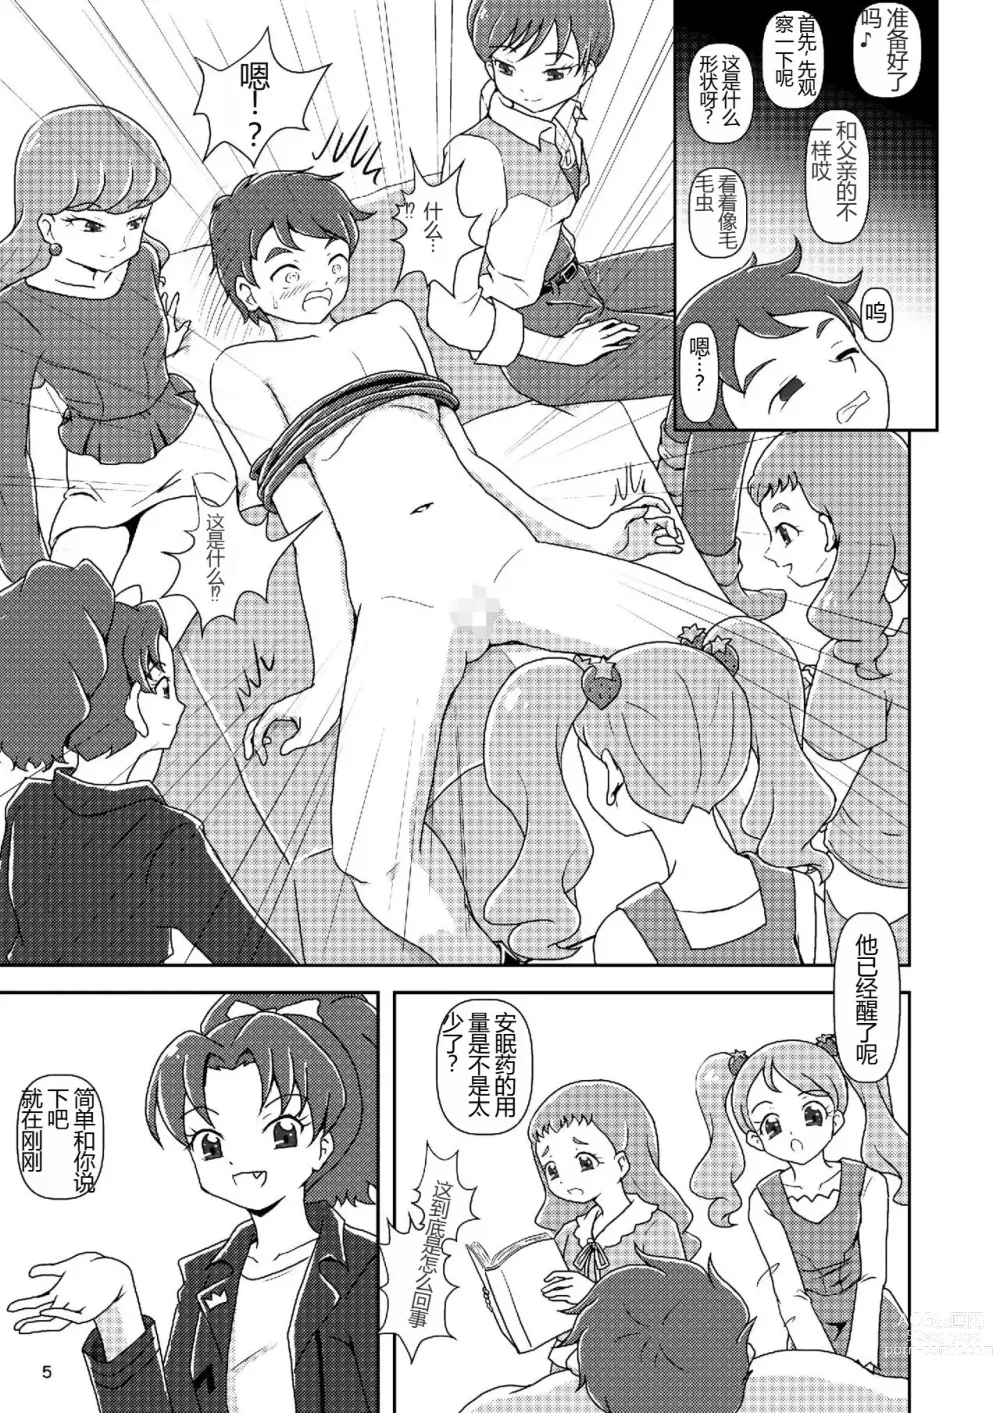 Page 4 of doujinshi Kirakira Zuricure Ashi Mode